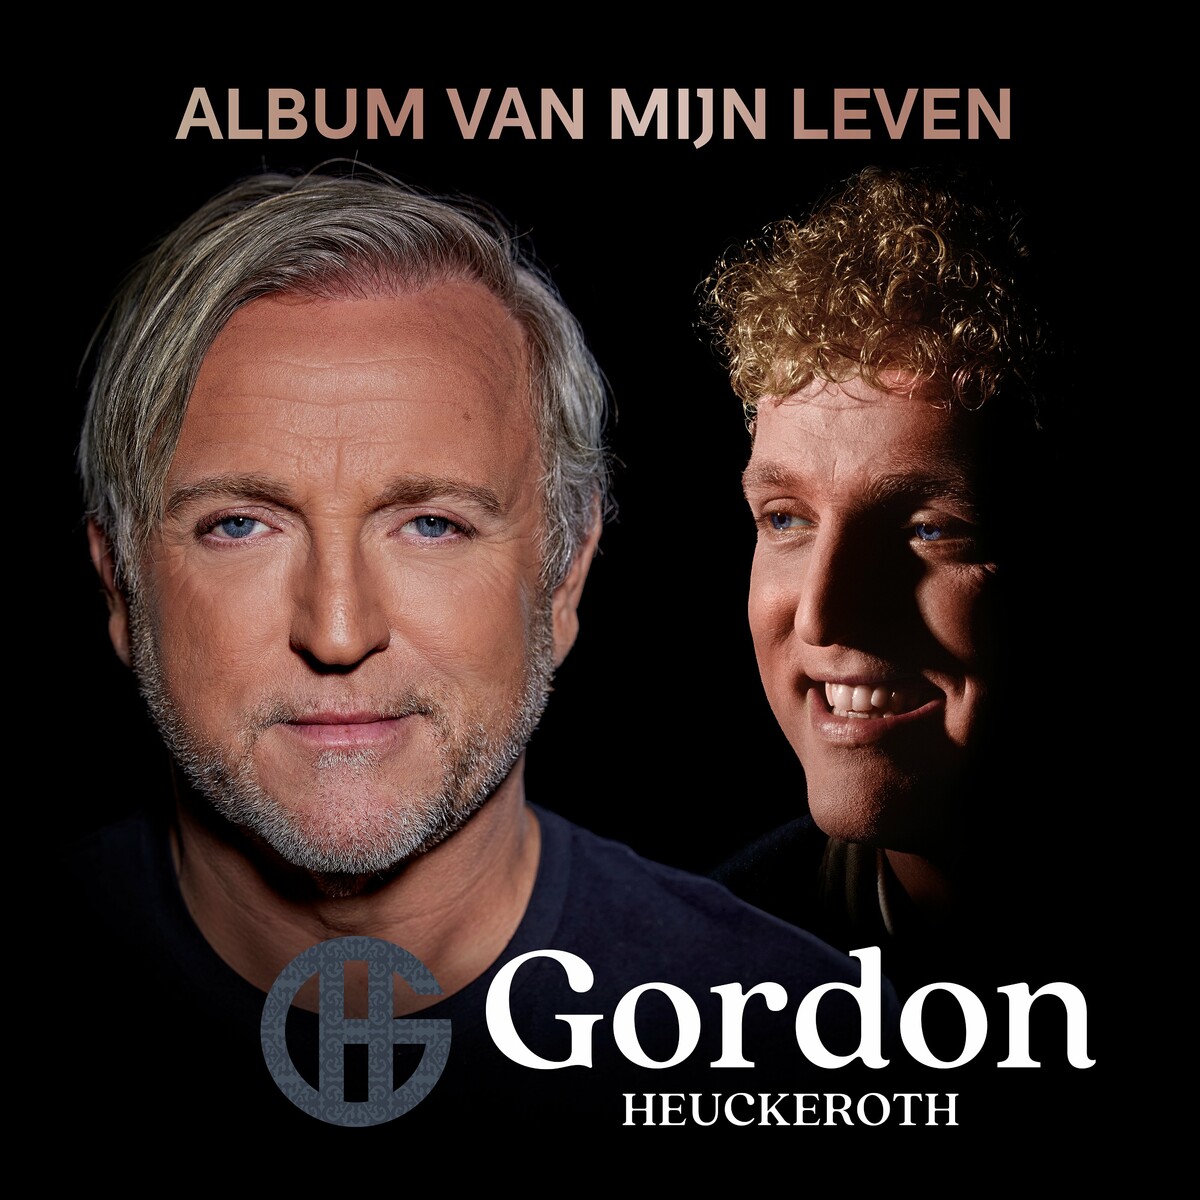 Gordon - ALBUM VAN MIJN LEVEN